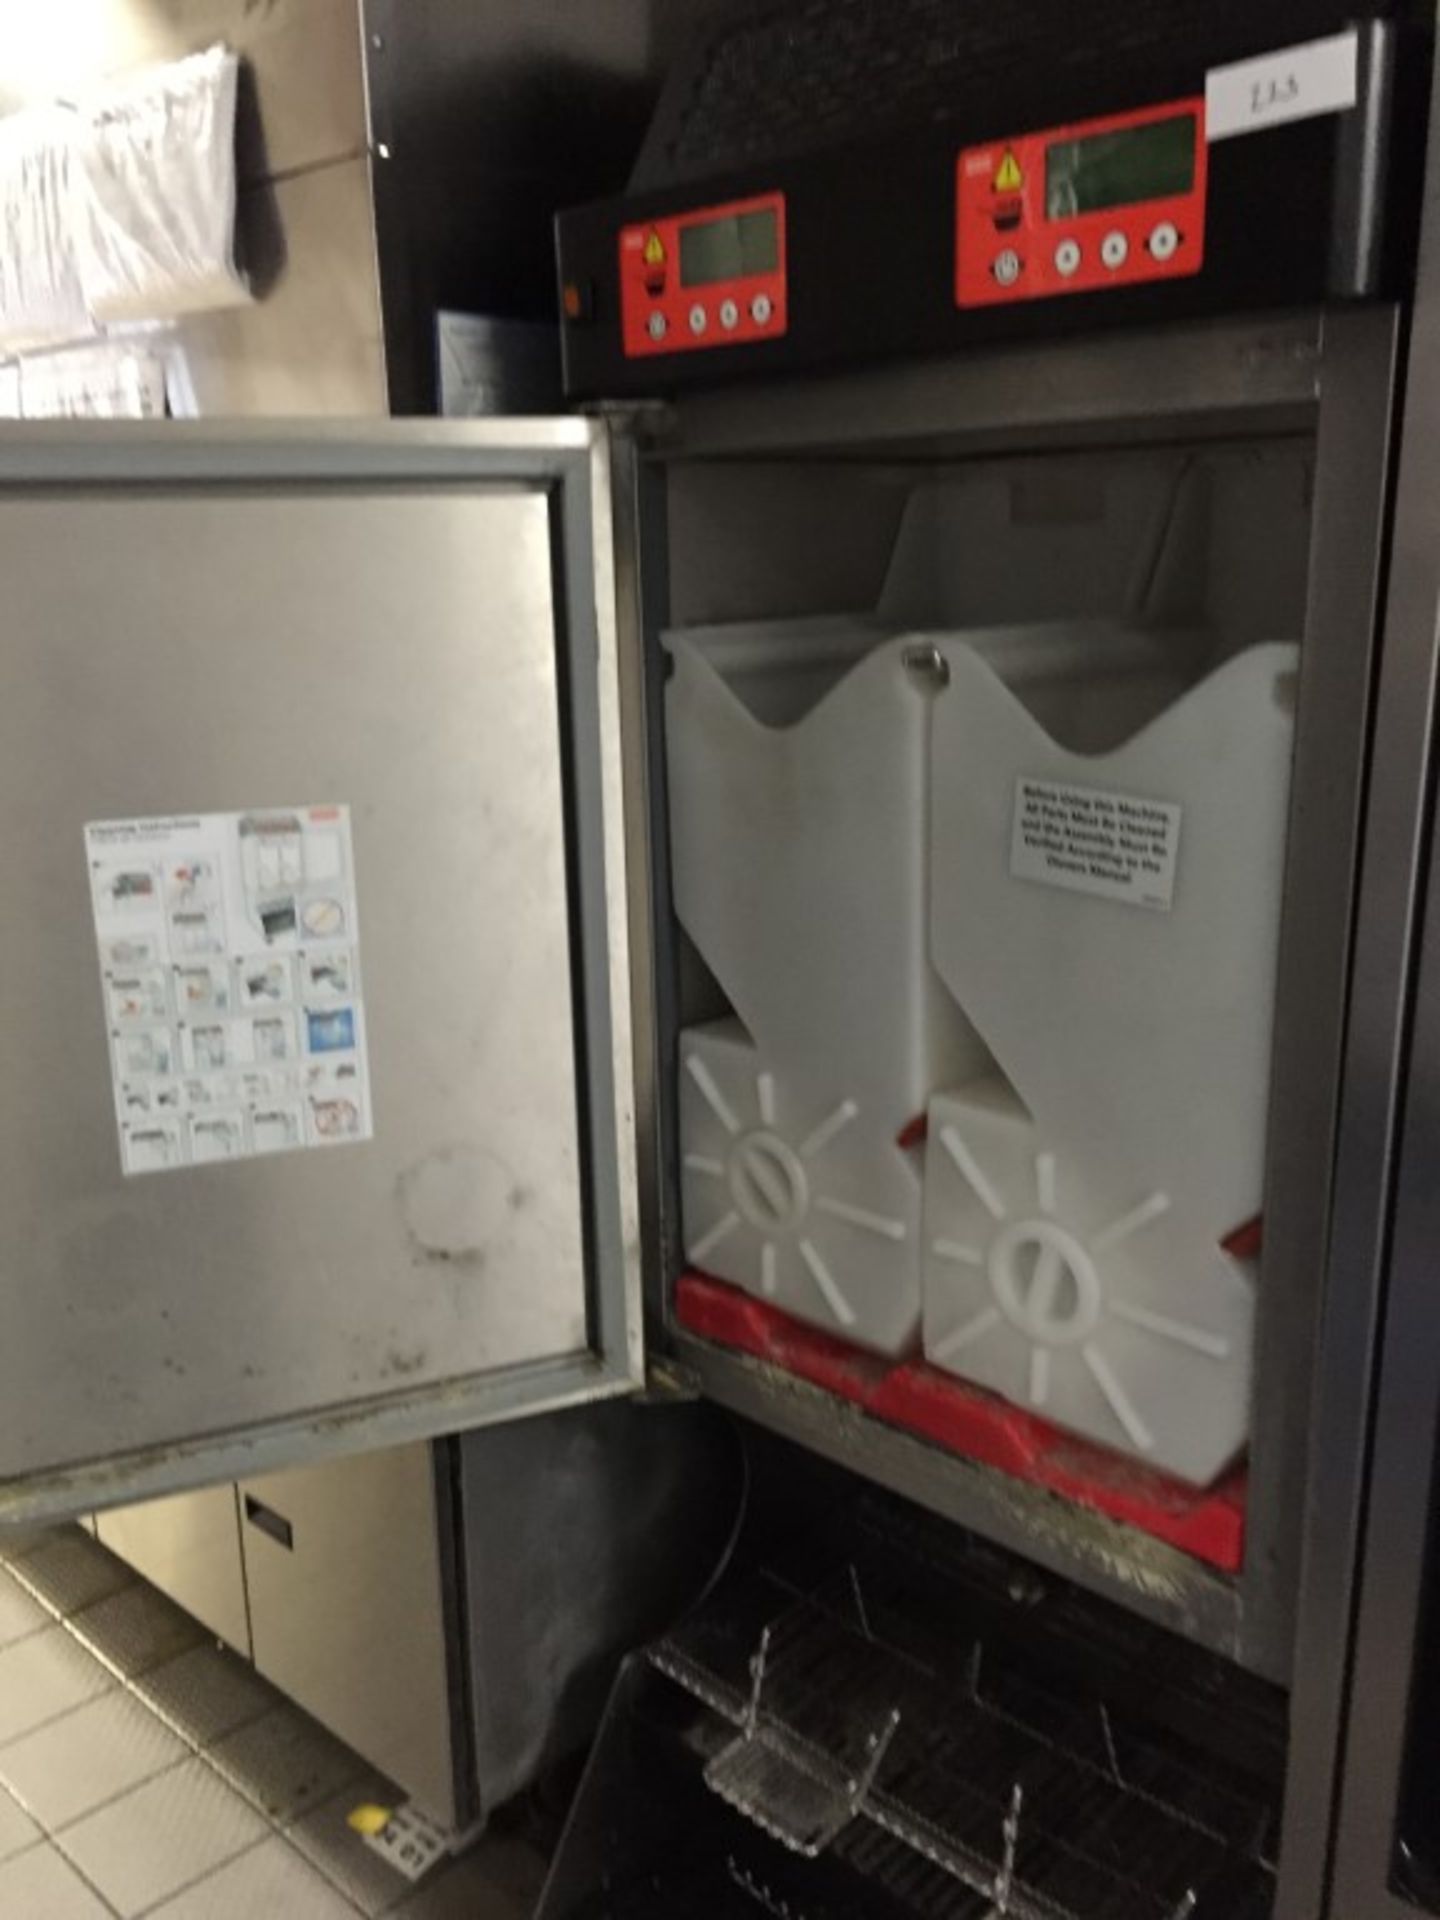 1 x Franke Frozen Food Product Dispenser – Model FD3 - Unique Dispensing system Ensuring Frozen Food - Image 4 of 5